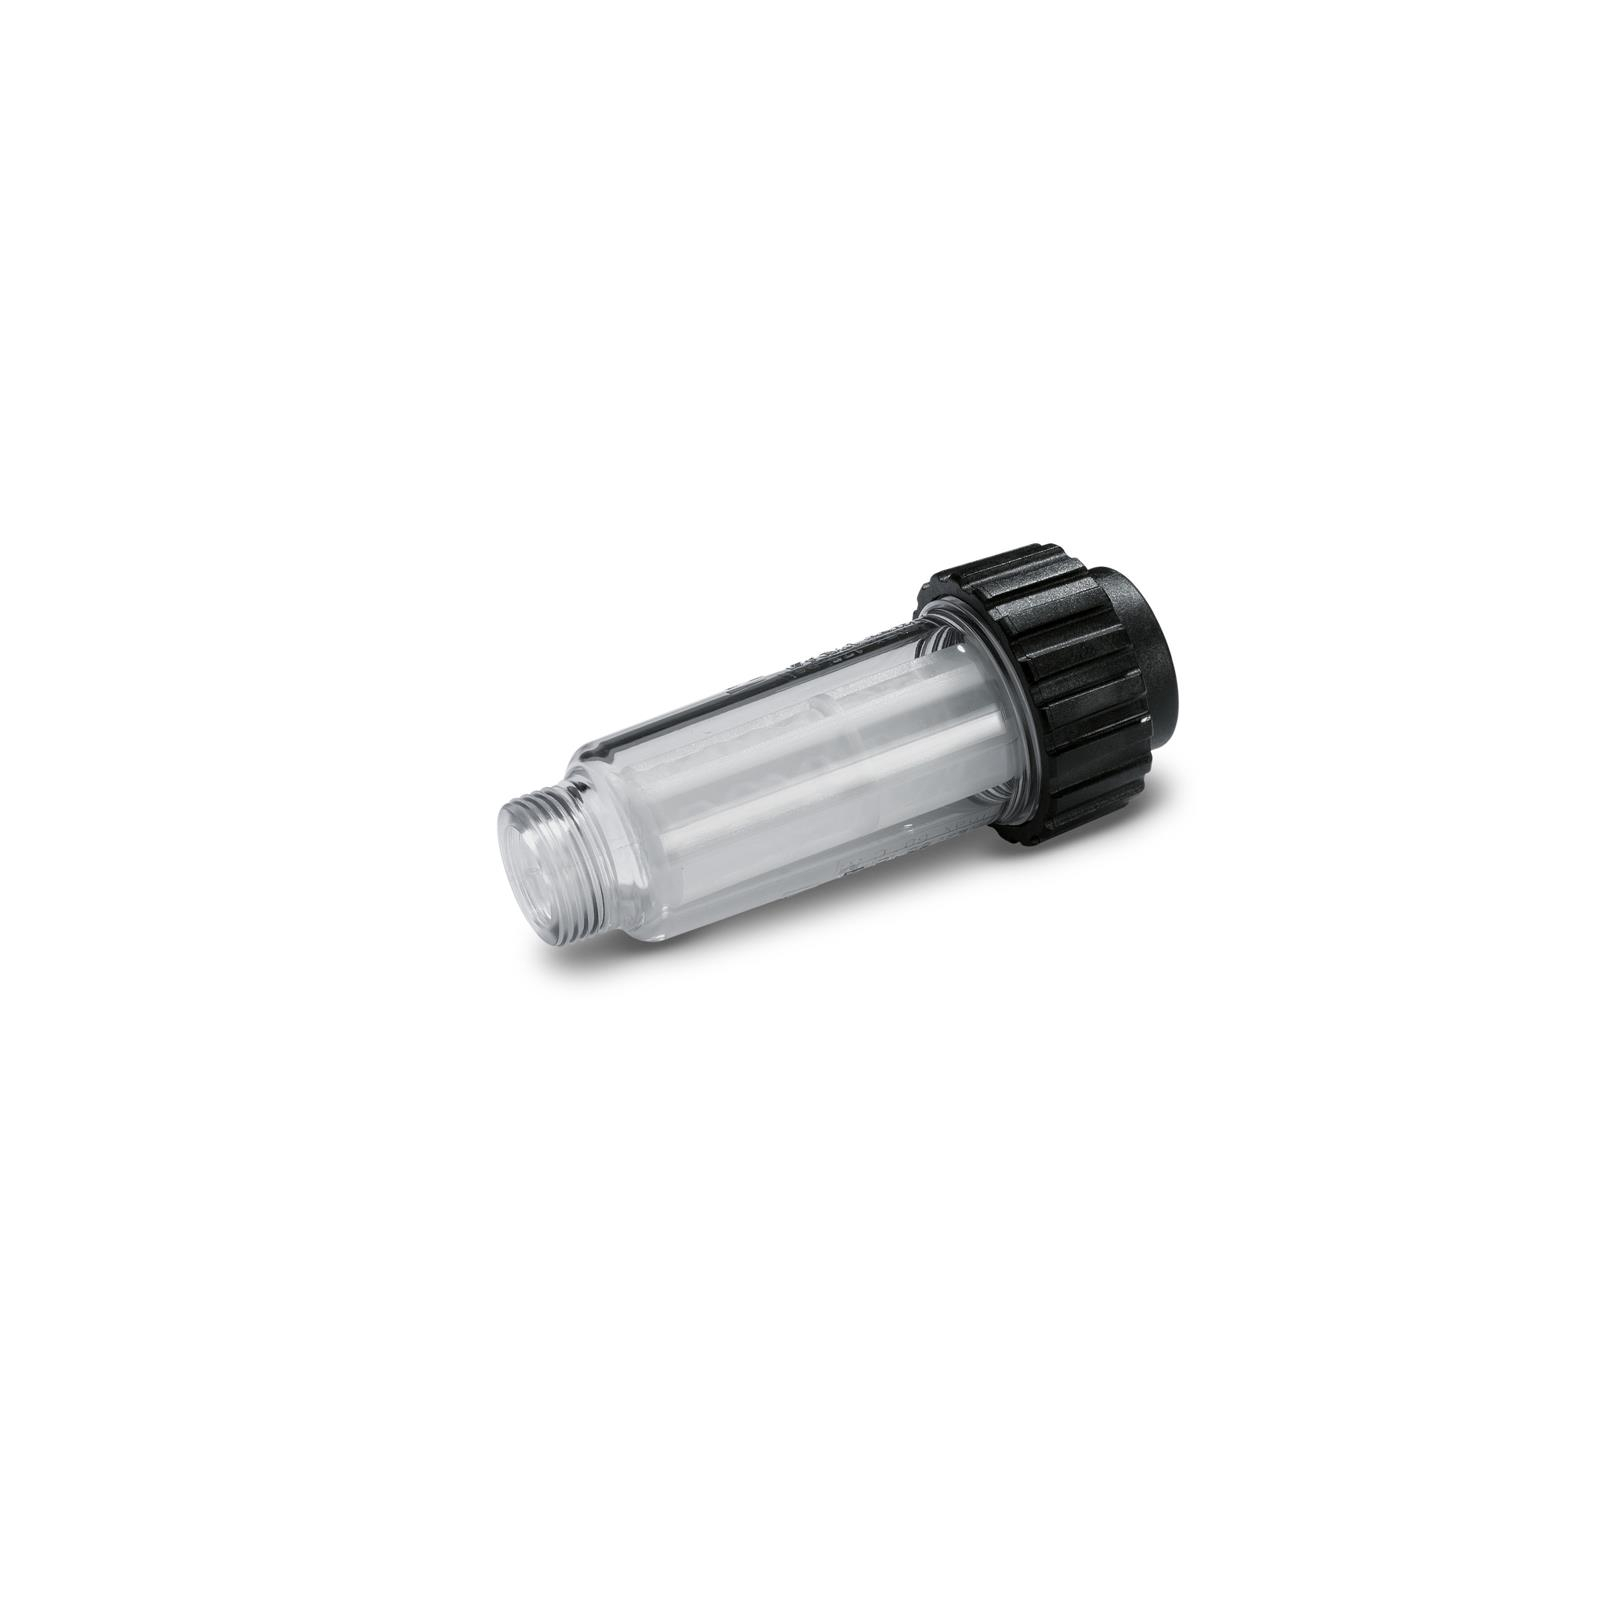 Фильтр для пылесоса Karcher водяной для моек высокого давления серии К2 - К7 (4.730-059.0)